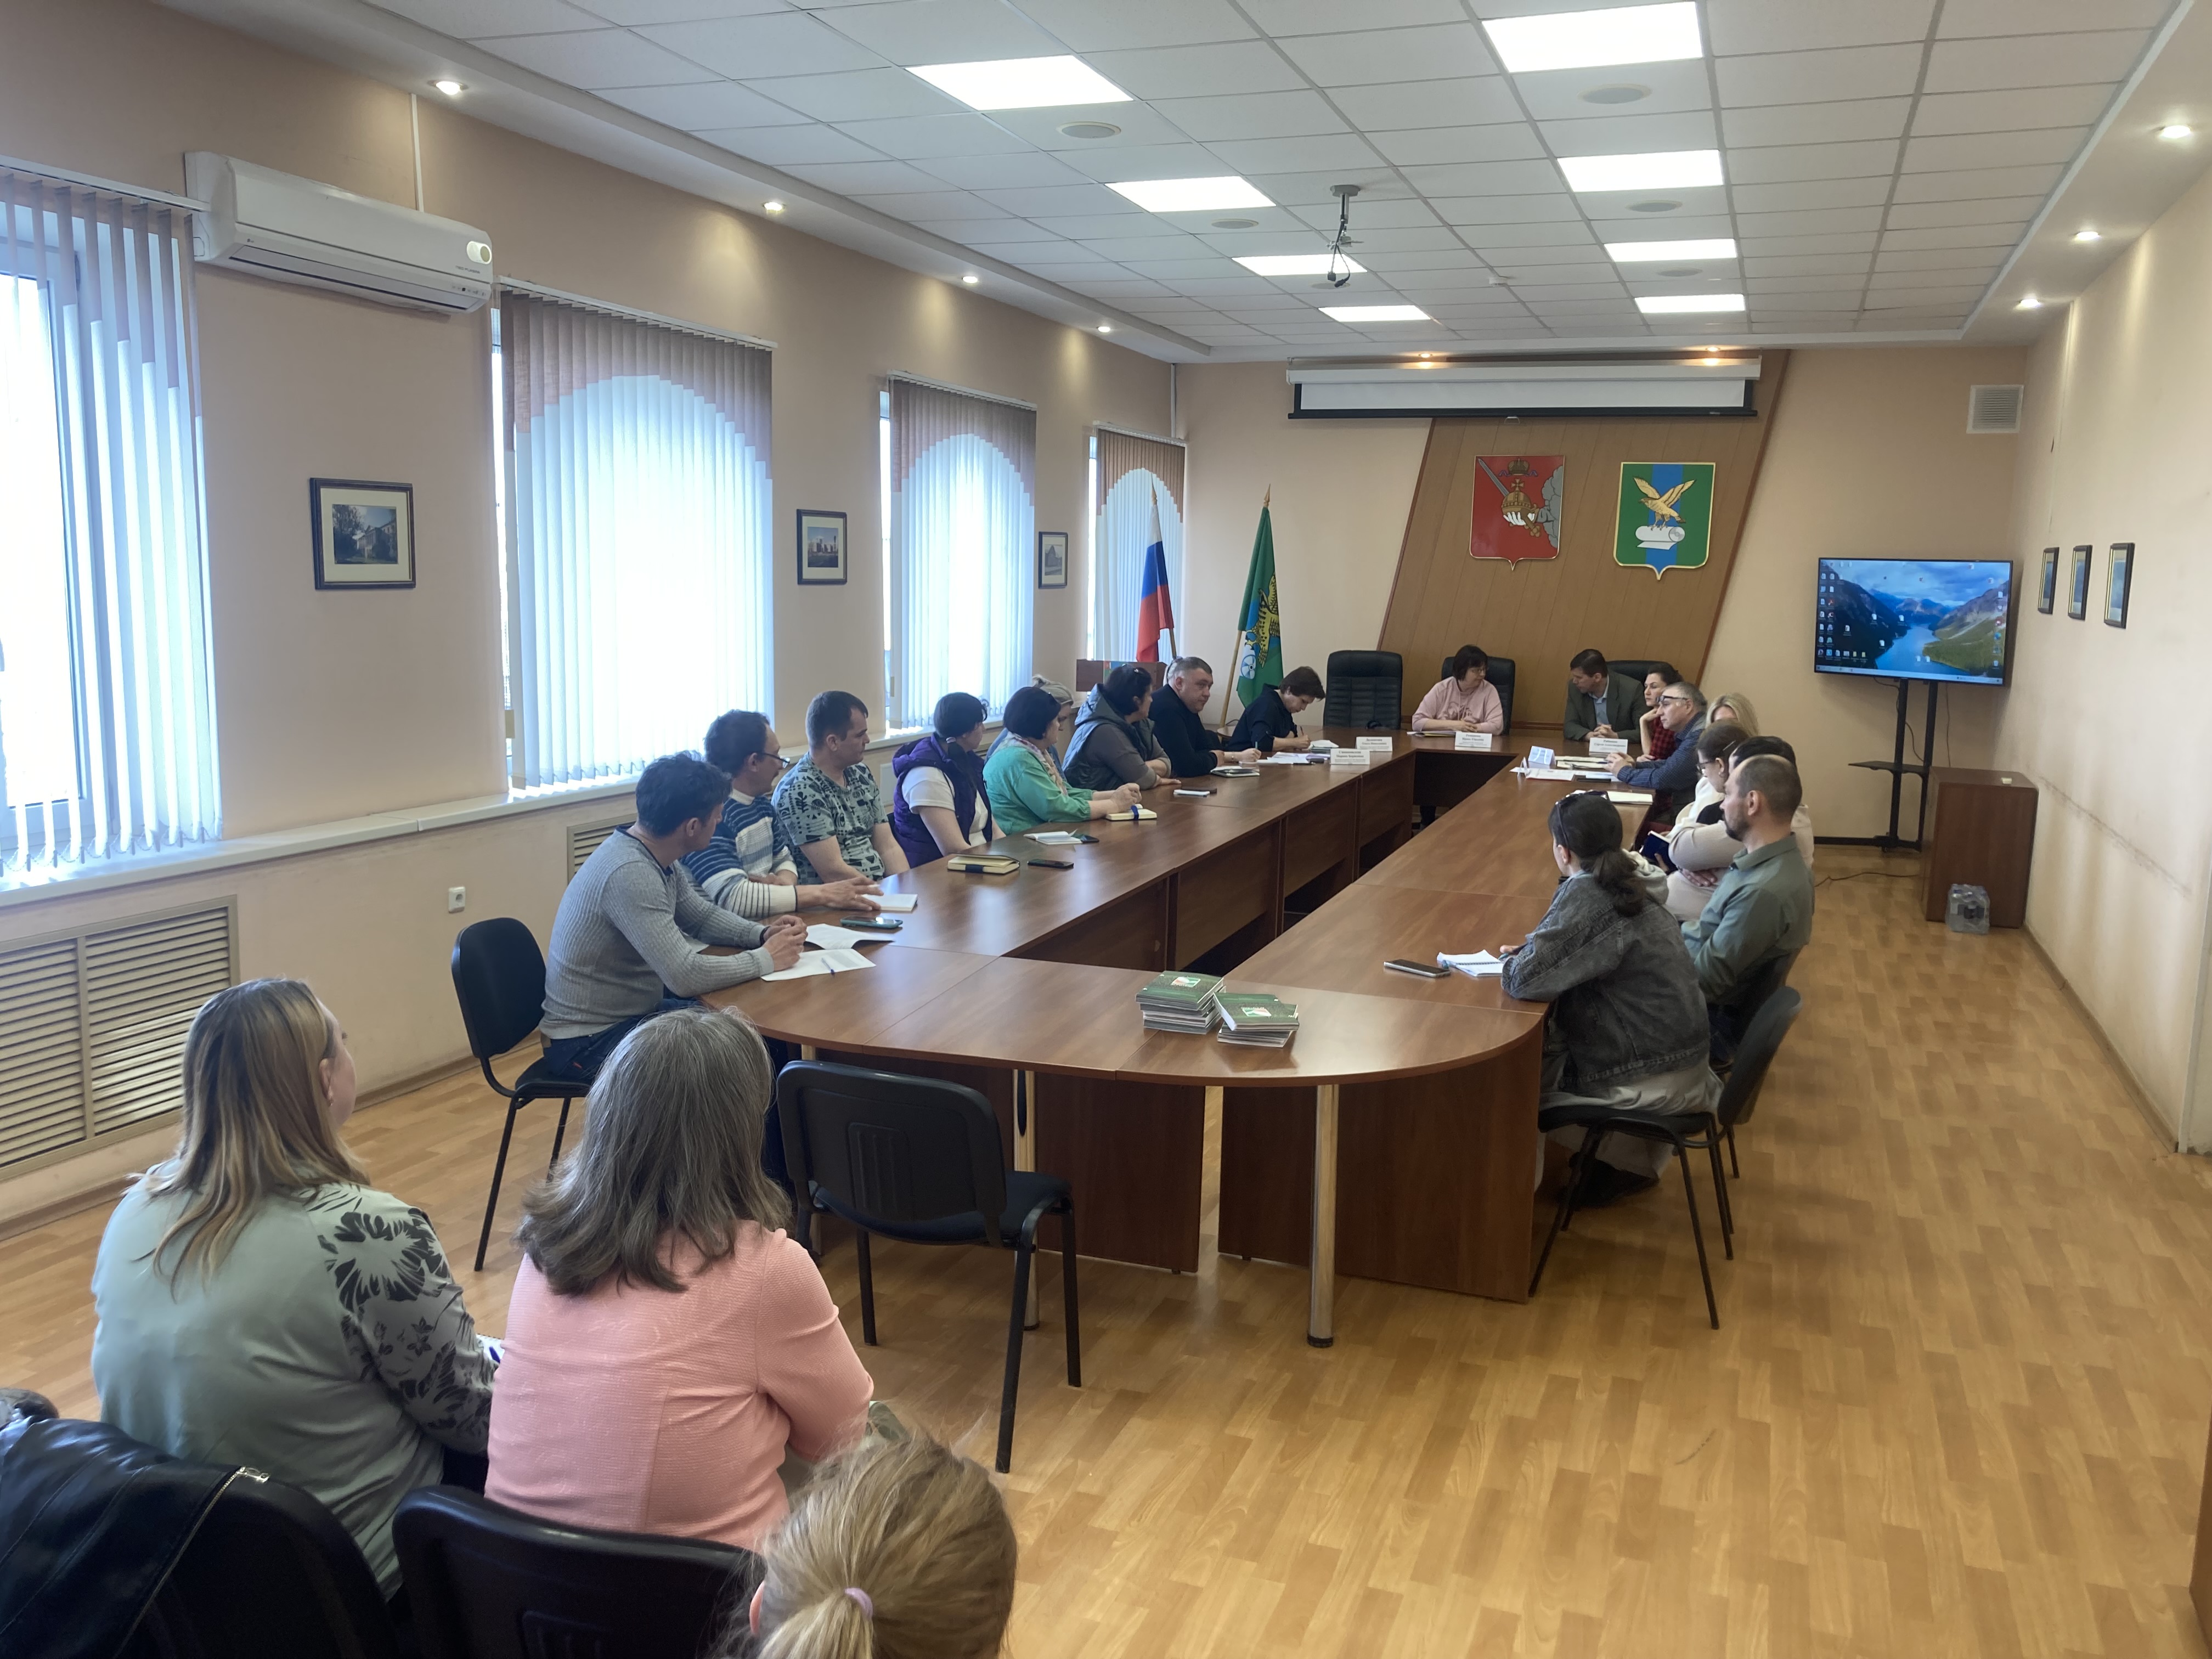 Информационный день для представителей малых форм хозяйствования состоялся в Сокольском округе Вологодской области 